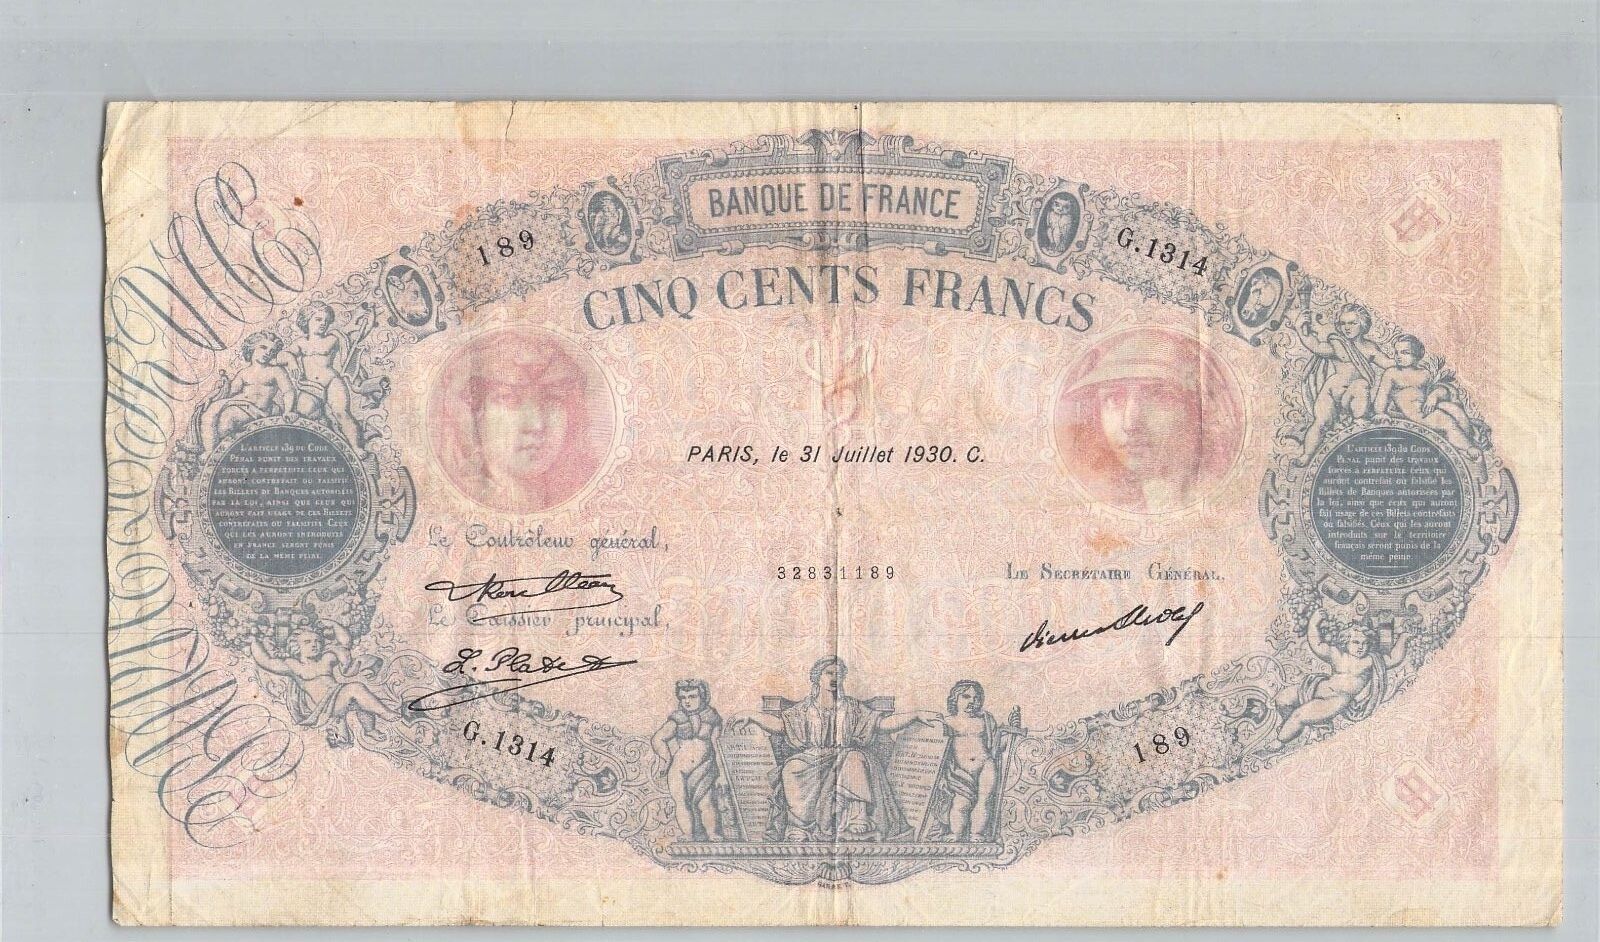 Francja 500 franków Niebieski I Różowy 31 lipca 1930 G 1314 N° 32831189 Pick 66L Nowy HOT